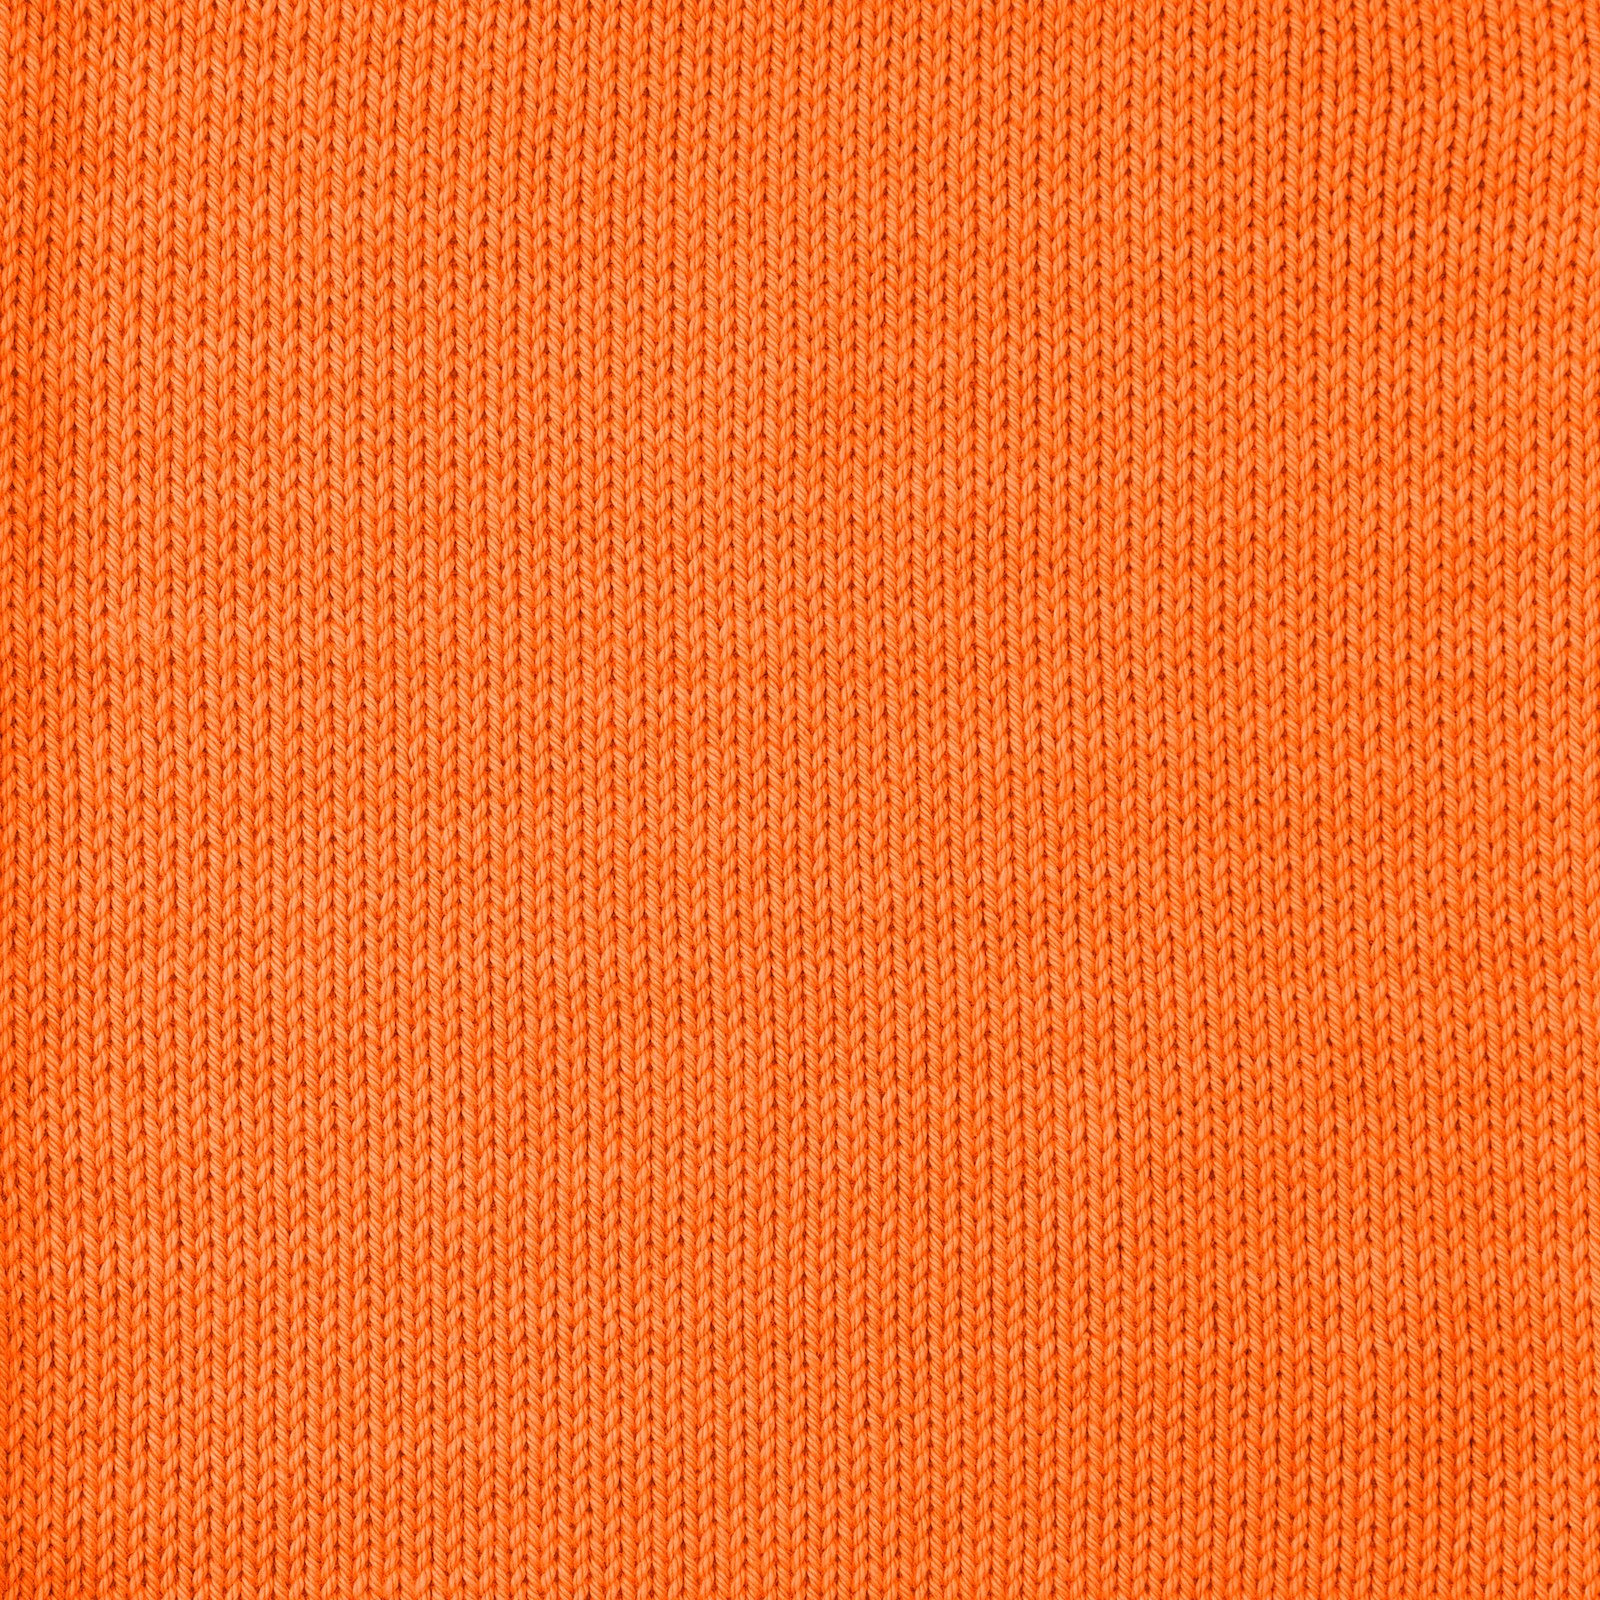 FRAYA, 100% cotton 8/4  yarn  "Colourful", orange 90060006_sskit